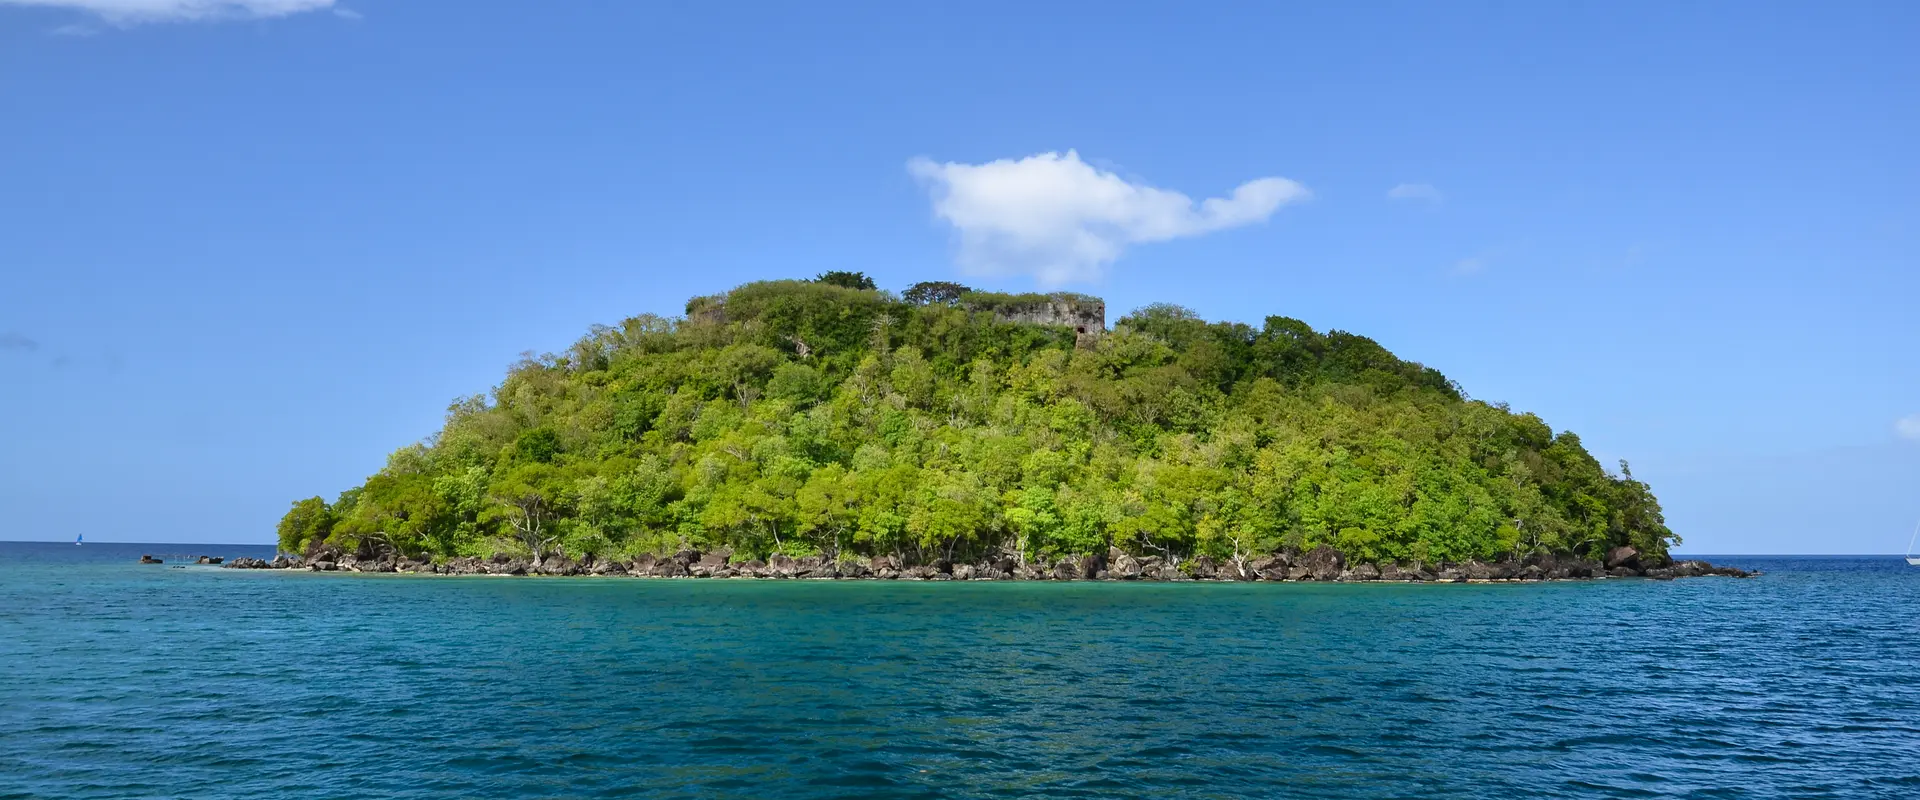 Ramiers islet, Martinique